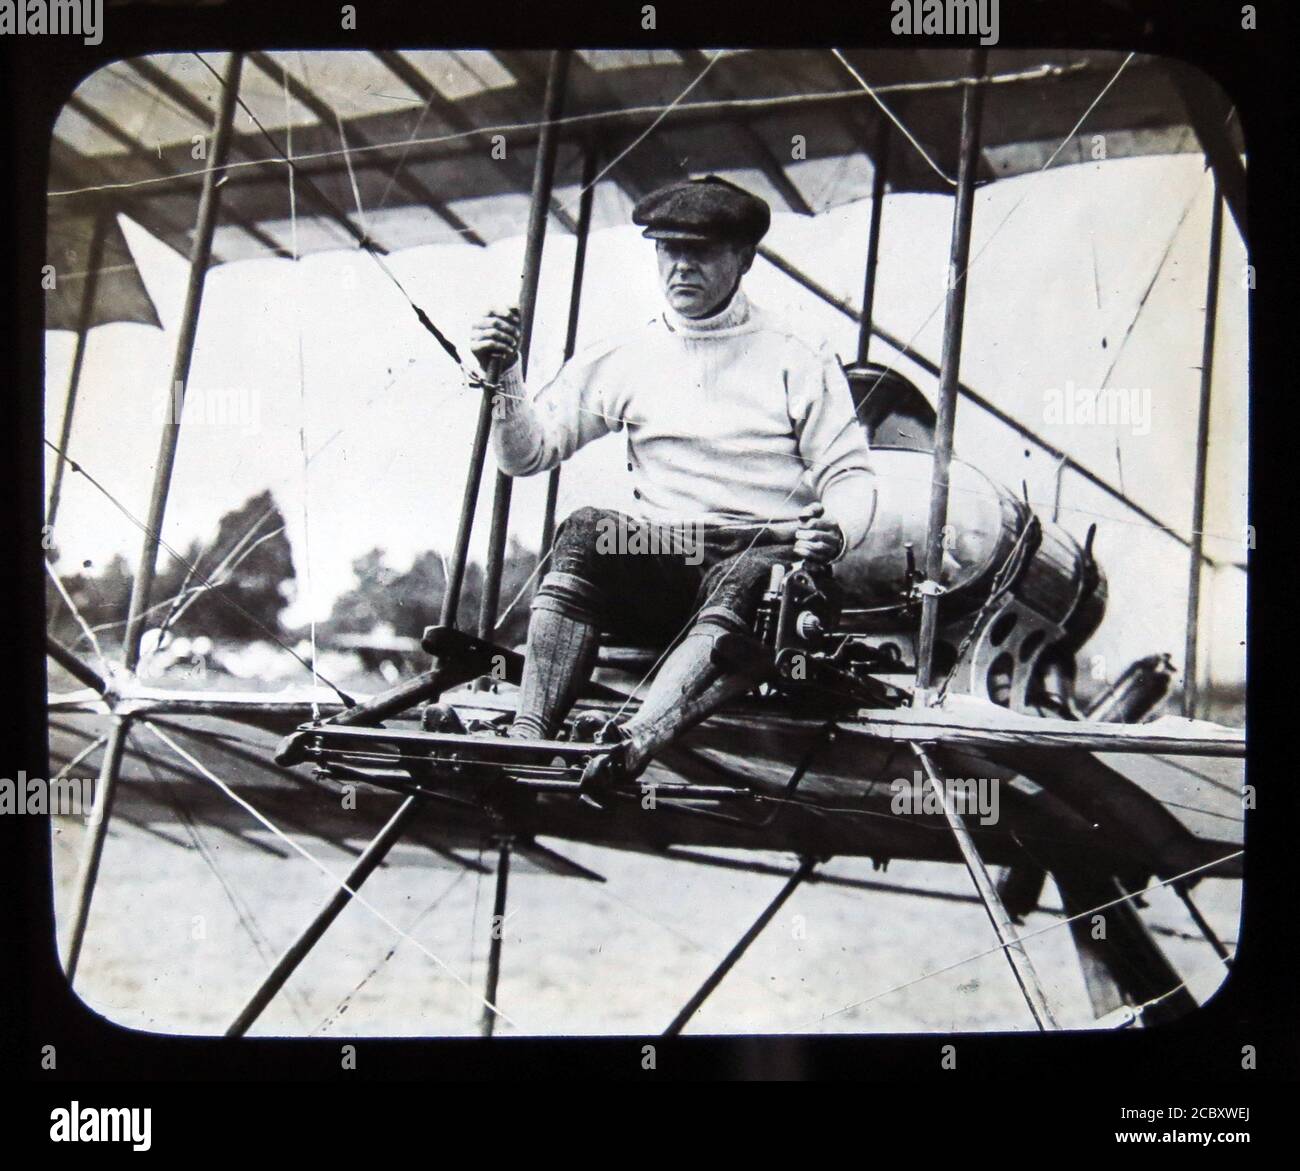 Une diapositive magique représentant Robert Loraine dans son biplan Bristol Boxkite lors de sa première apparition publique en tant que pilote (sous l'alias Robert Jones) à la semaine de l'aviation de Bournemouth en juillet 1910. Loraine était un acteur, un acteur-gérant et un soldat britannique de Londres et de Broadway qui a plus tard profité d'une carrière secondaire en tant qu'aviateur pionnier. En septembre 1910, il effectue le premier vol d'avion de l'Angleterre vers l'Irlande. Diapositive publiée par W. Butcher & Sons, Londres et datant d'environ 1914. Banque D'Images